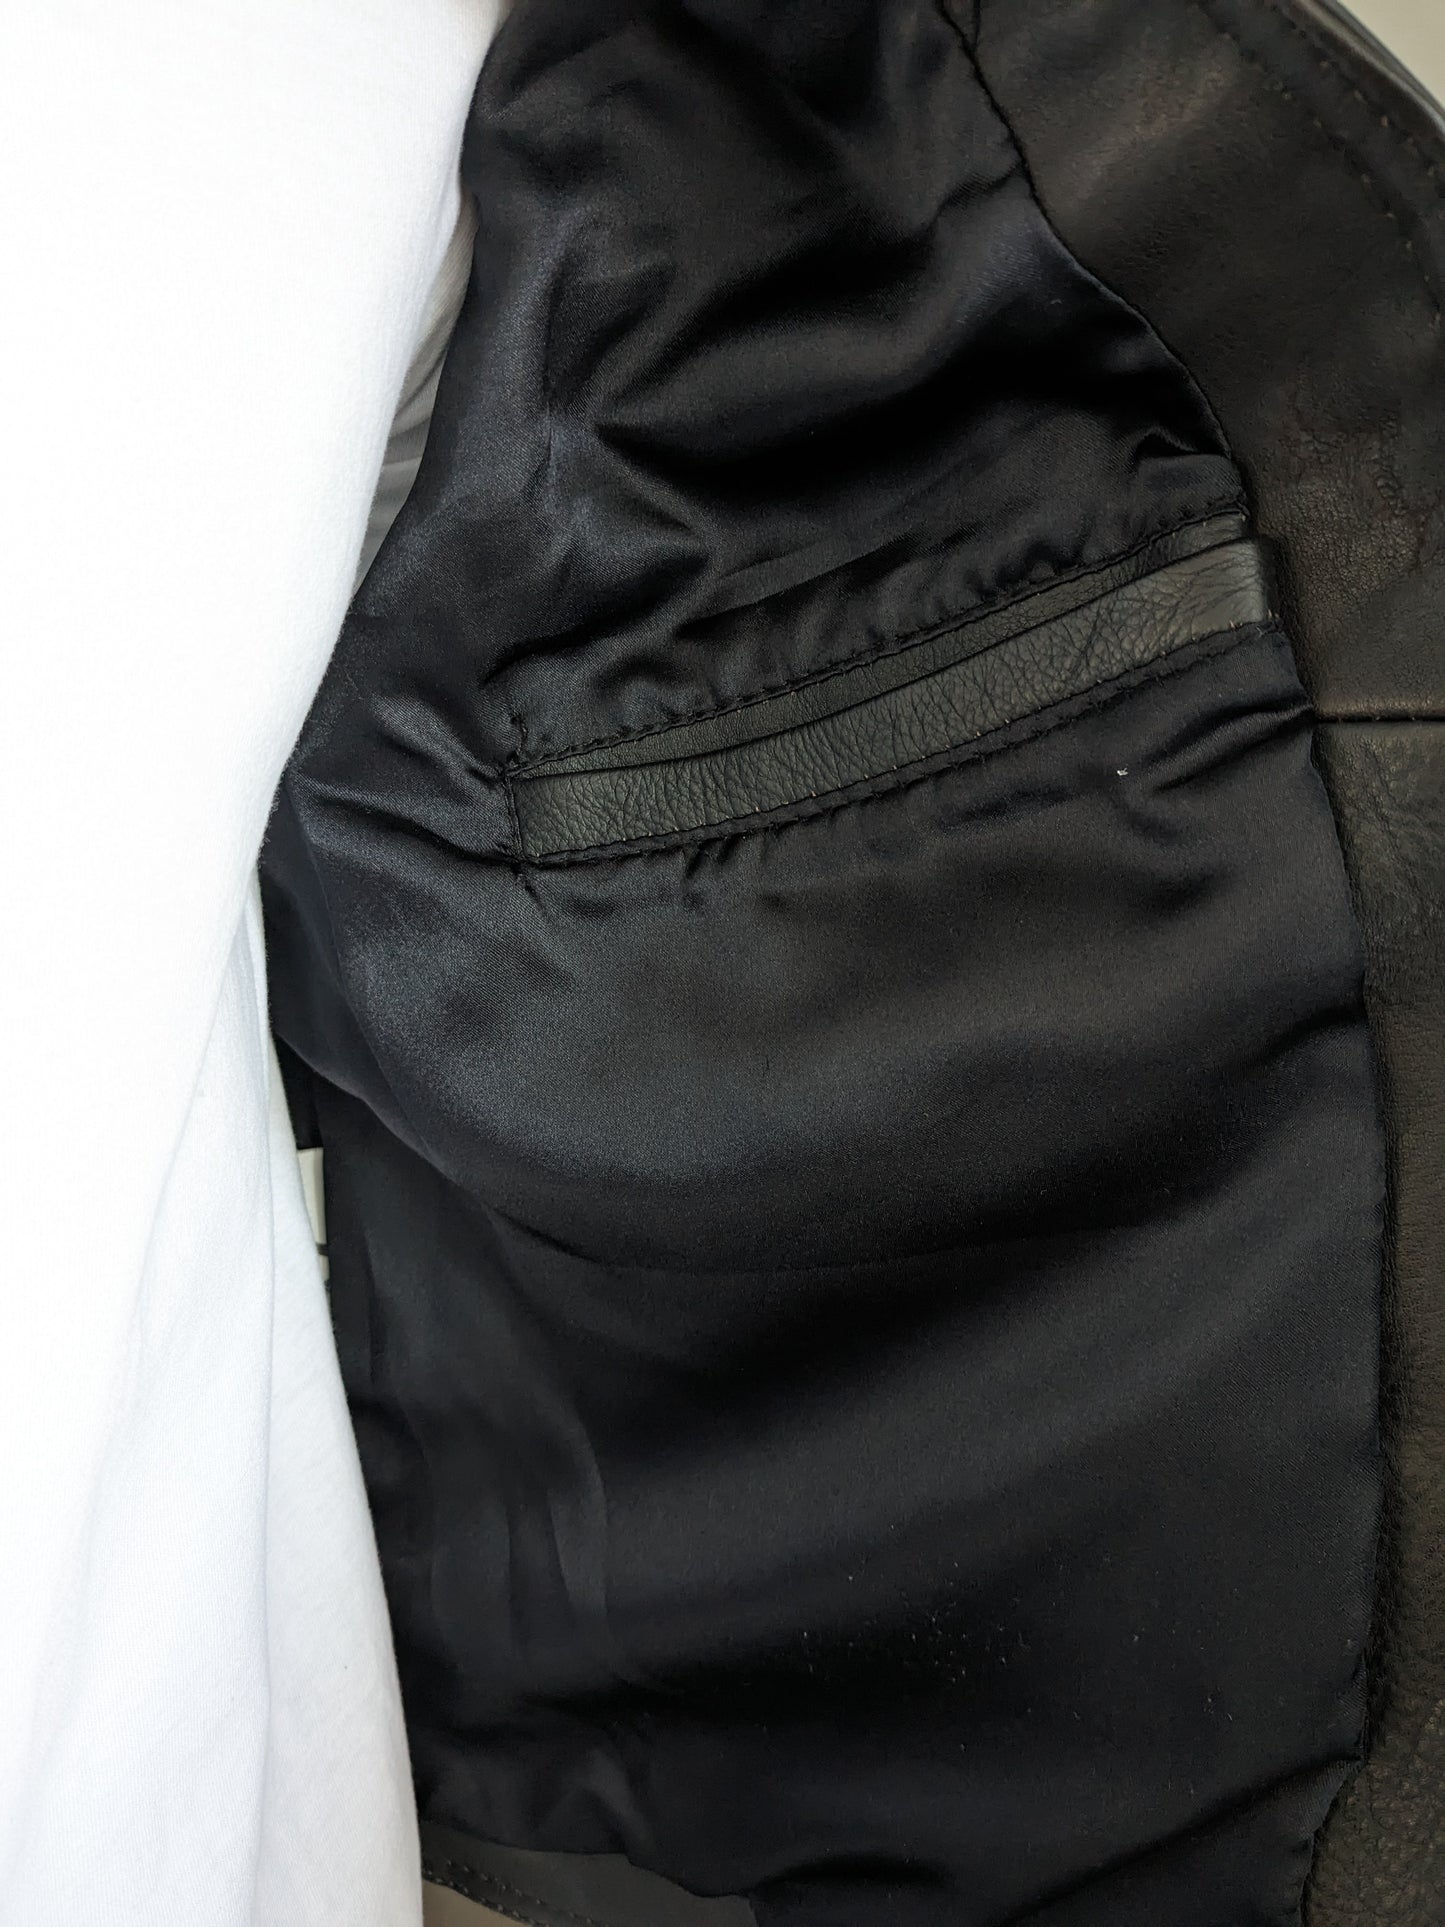 Vintage 80s 90er Jahre Leder Körperwärmer / Gilet mit vielen Taschen und 2 Innentaschen. Dunkelbraun. Größe S / M.